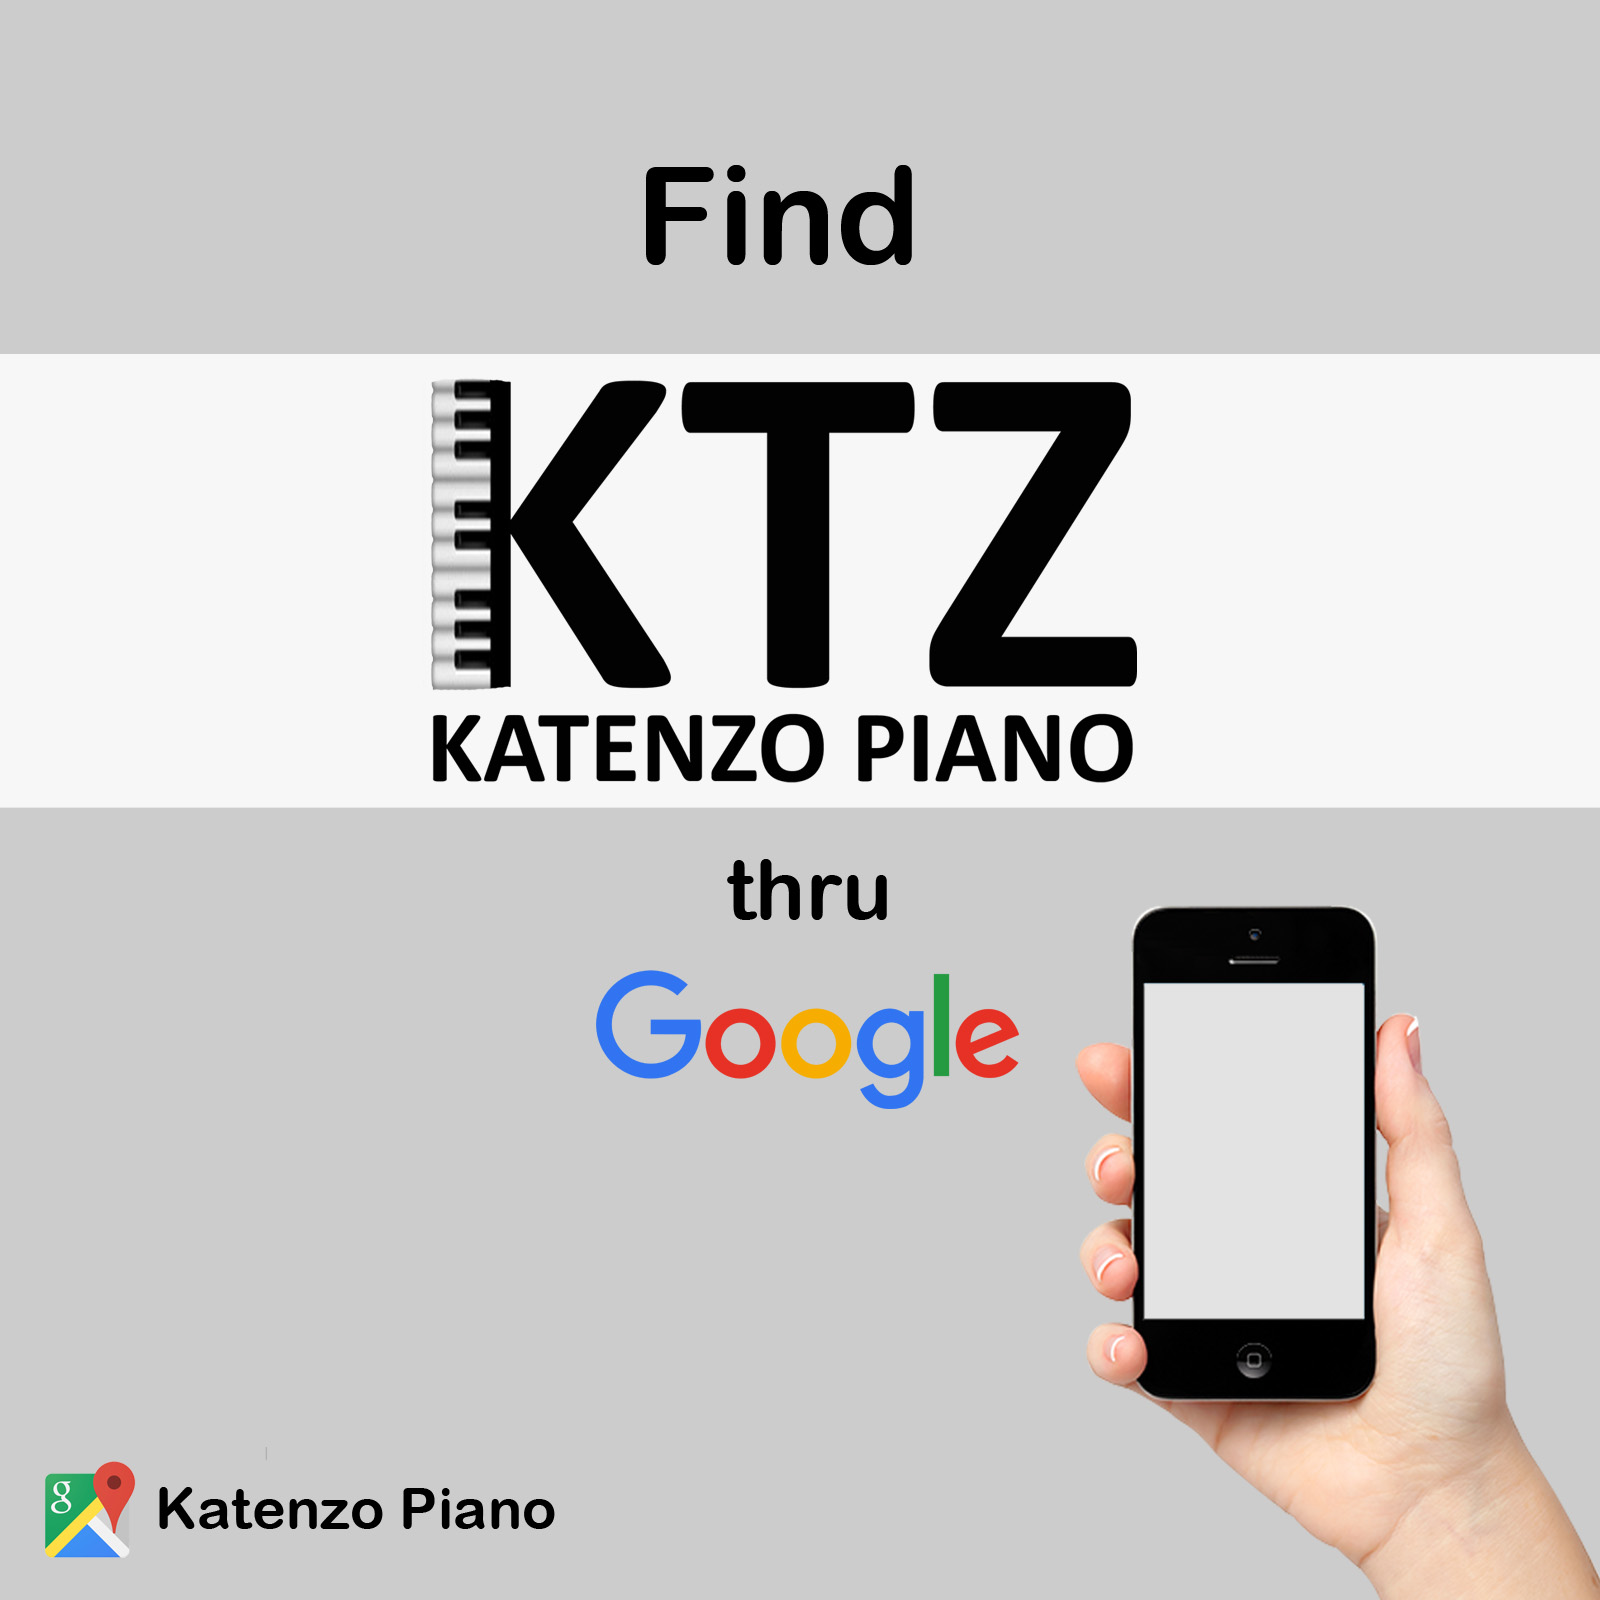 Temukan Katenzo Piano melalui Google